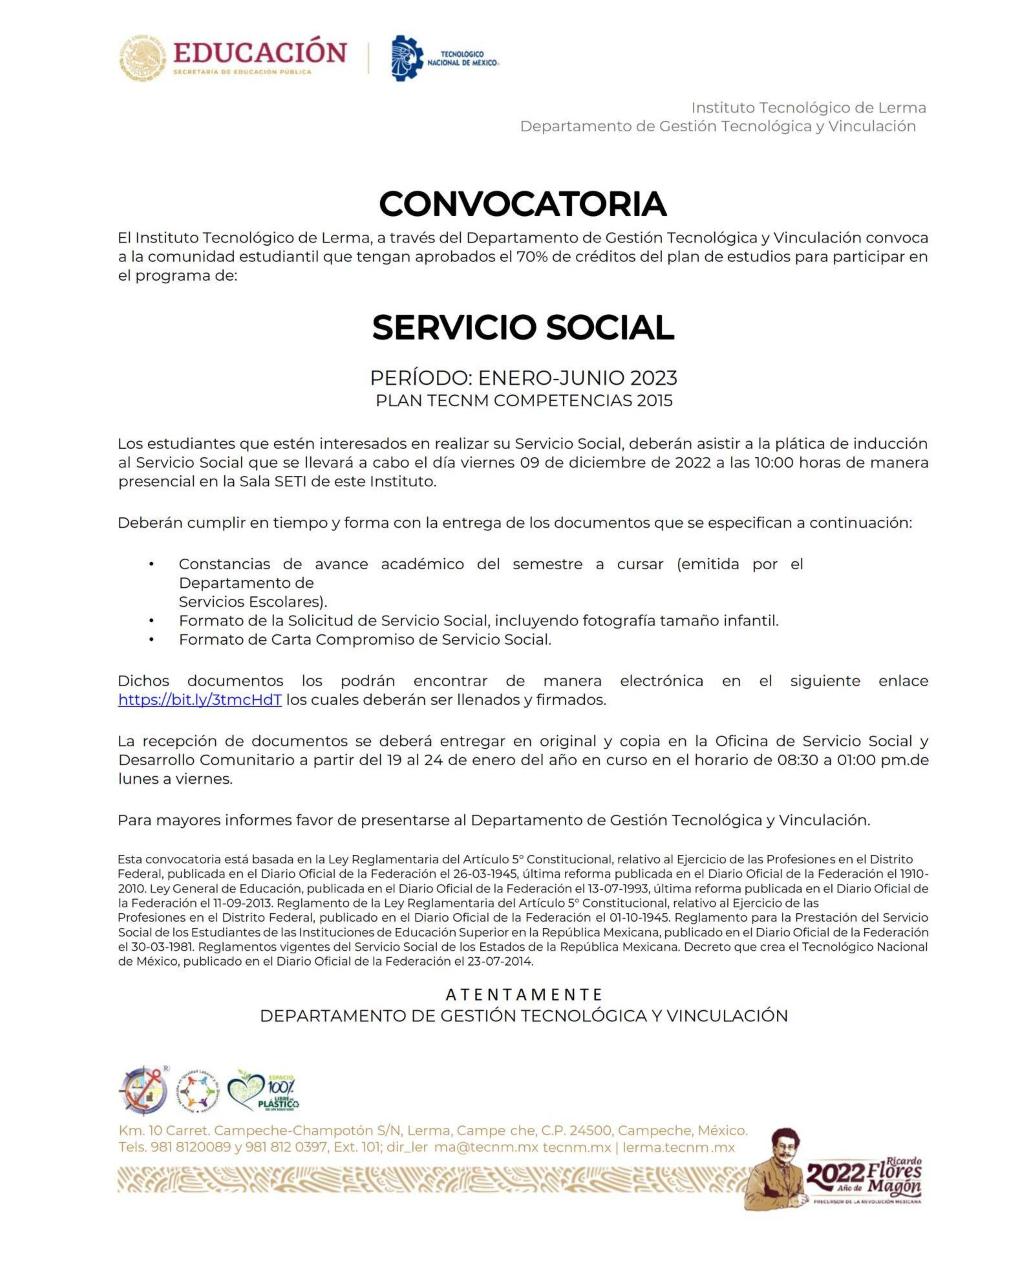 Publicamos la Convocatoria de Servicio Social ENE-JUN 2023, Plan Competencias 2015